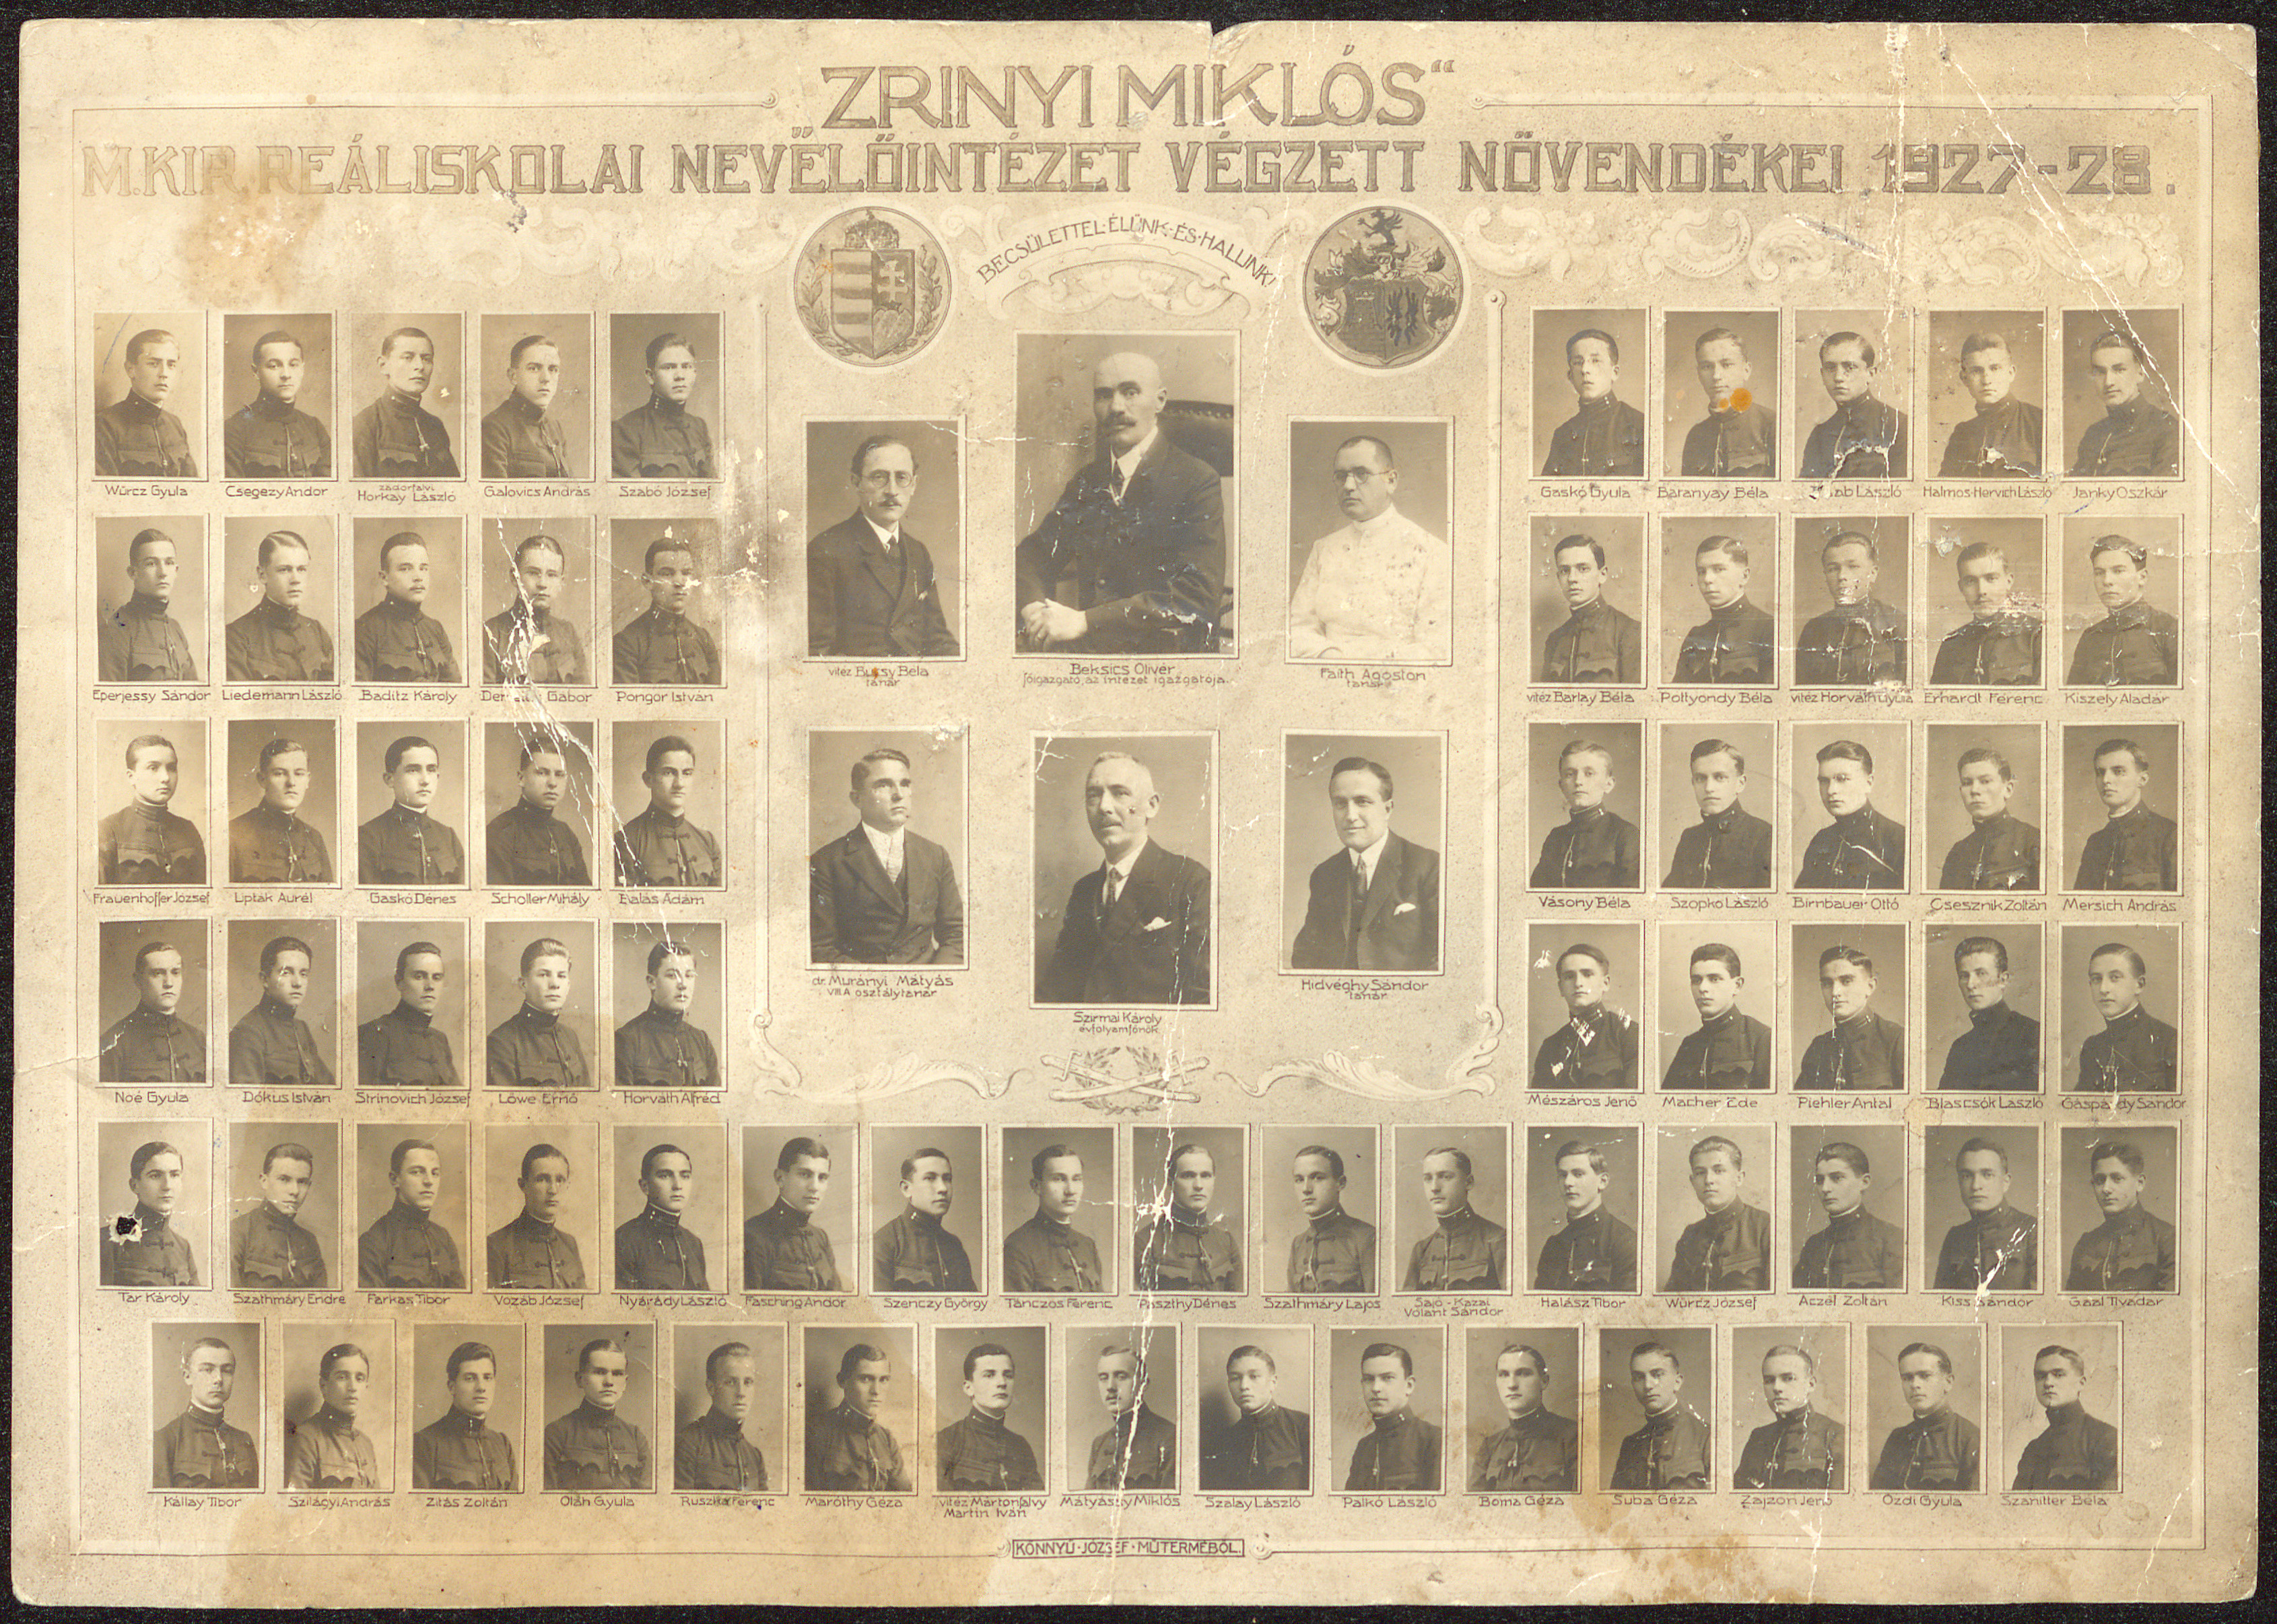 Zrínyi Miklós m. kir. Reáliskolai Nevelőintézet végzett növendékei1927-28.